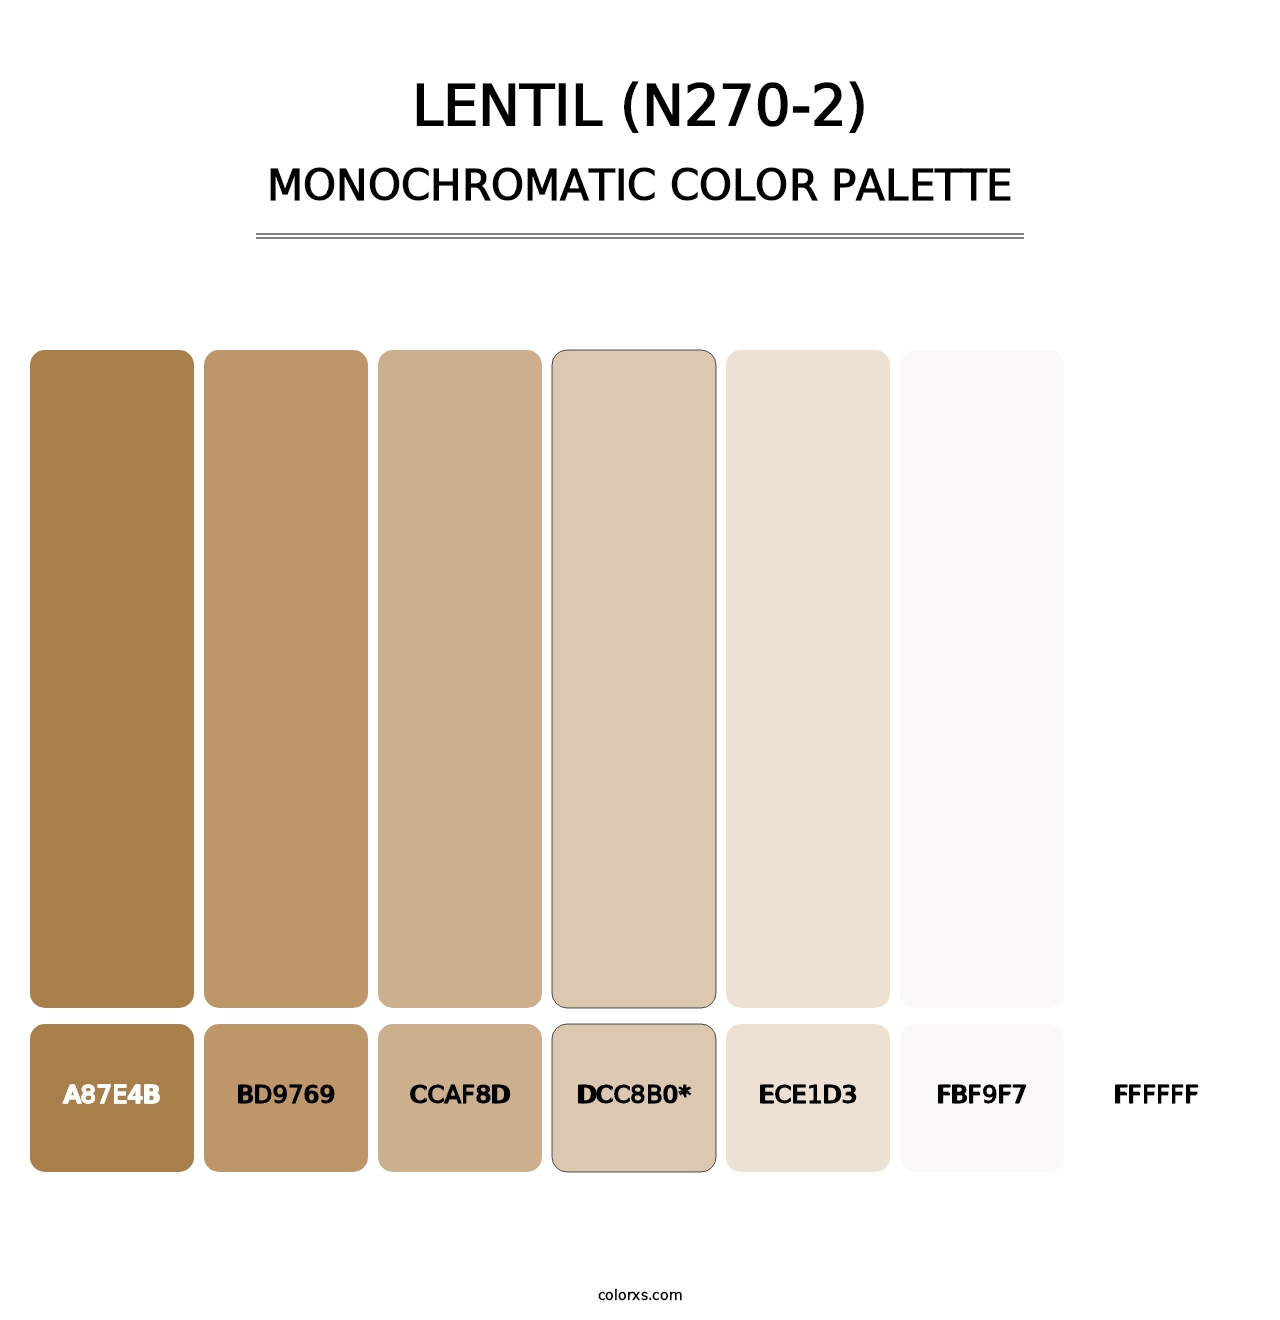 Lentil (N270-2) - Monochromatic Color Palette